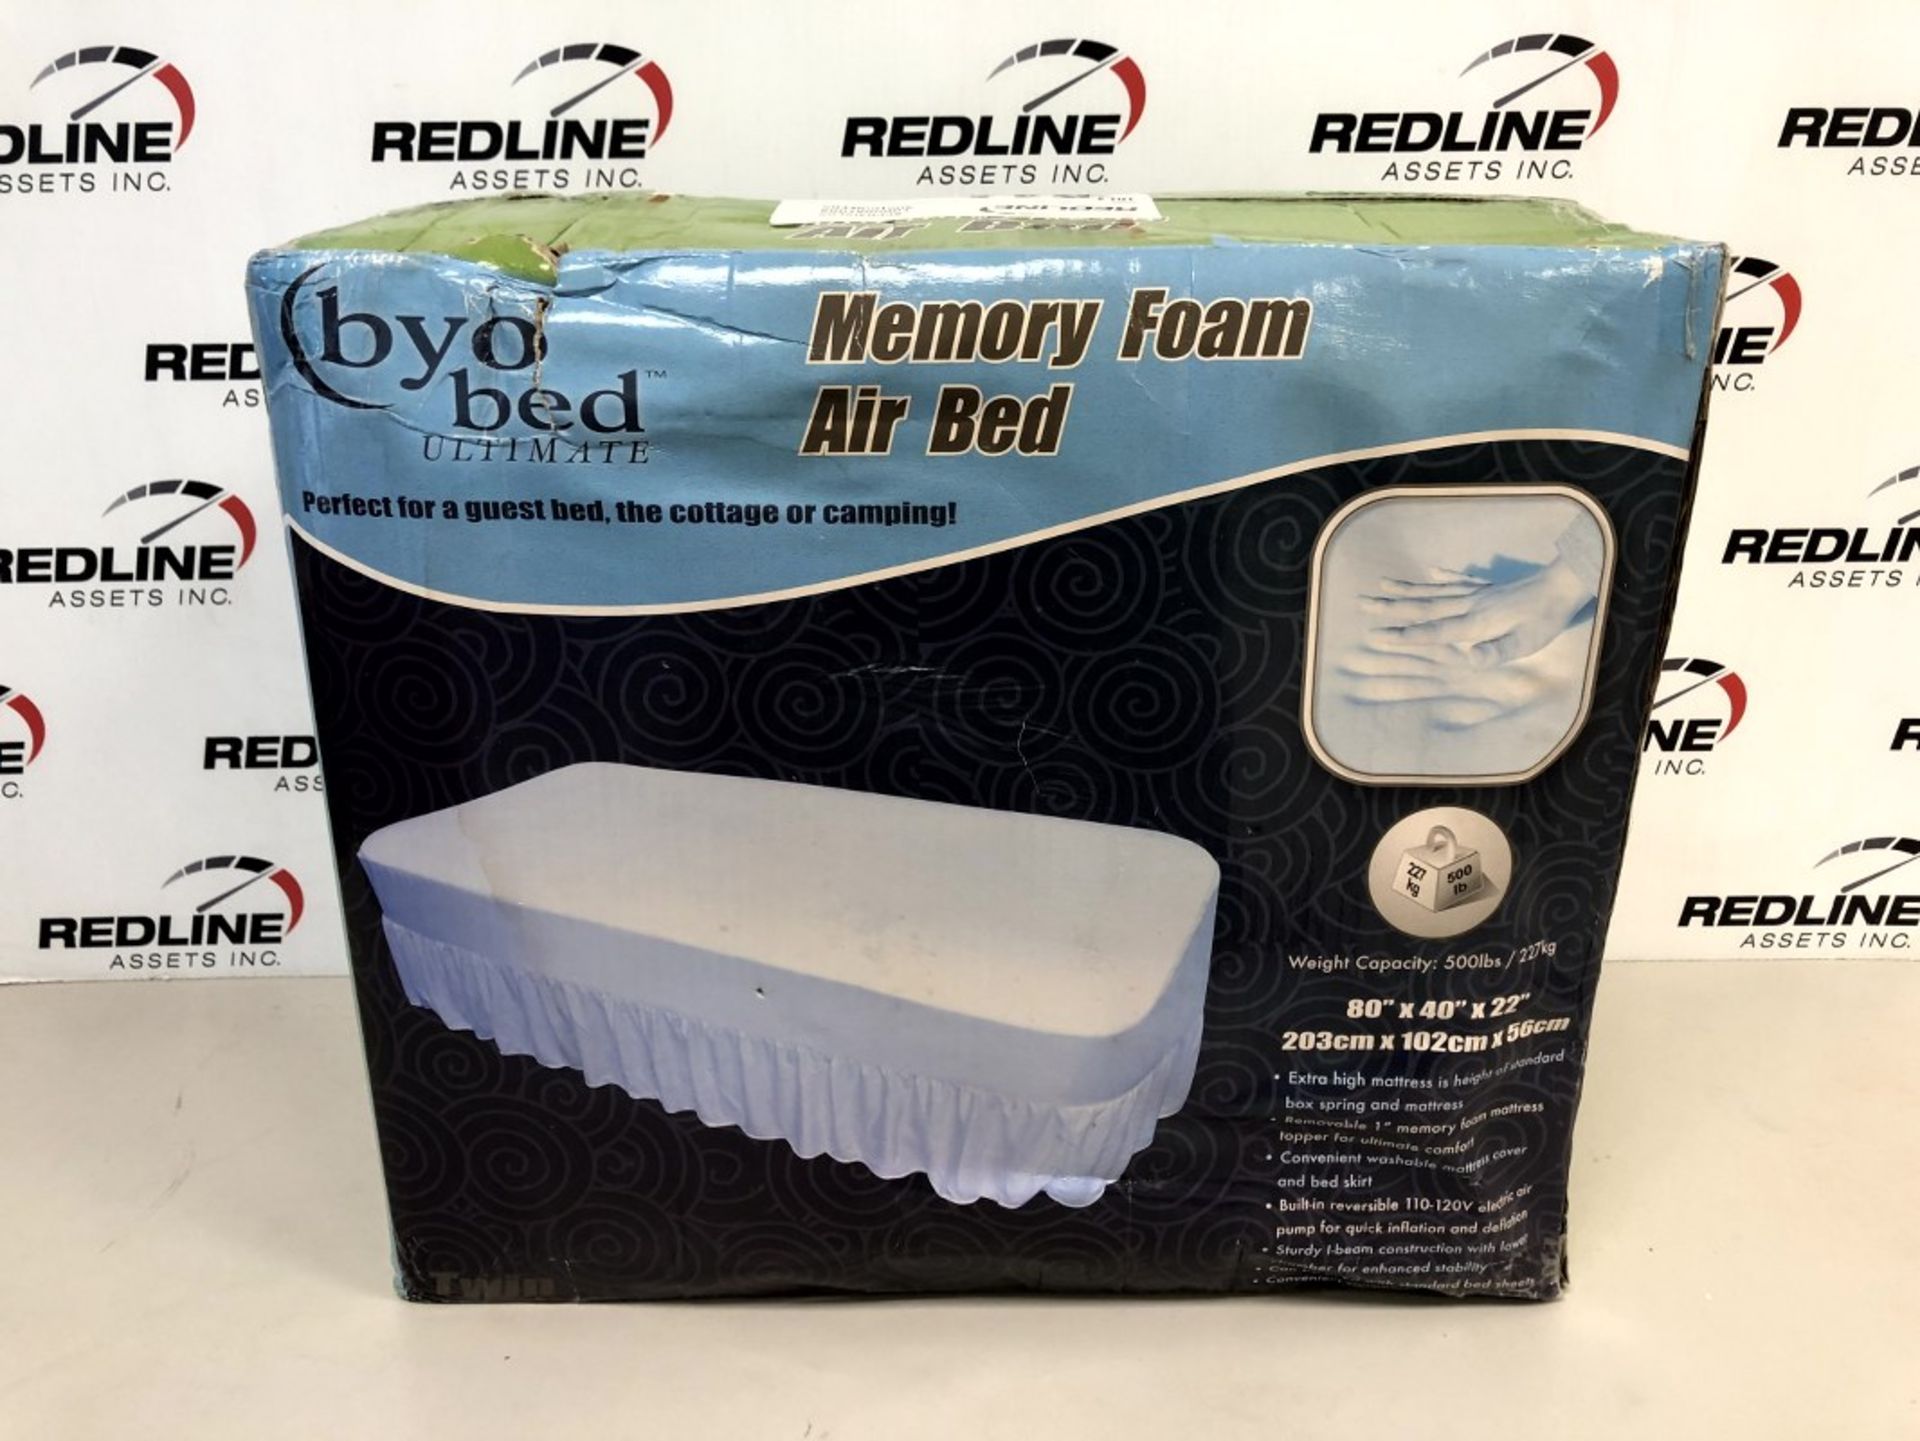 Byo Bed - Memory Foam Air Bed